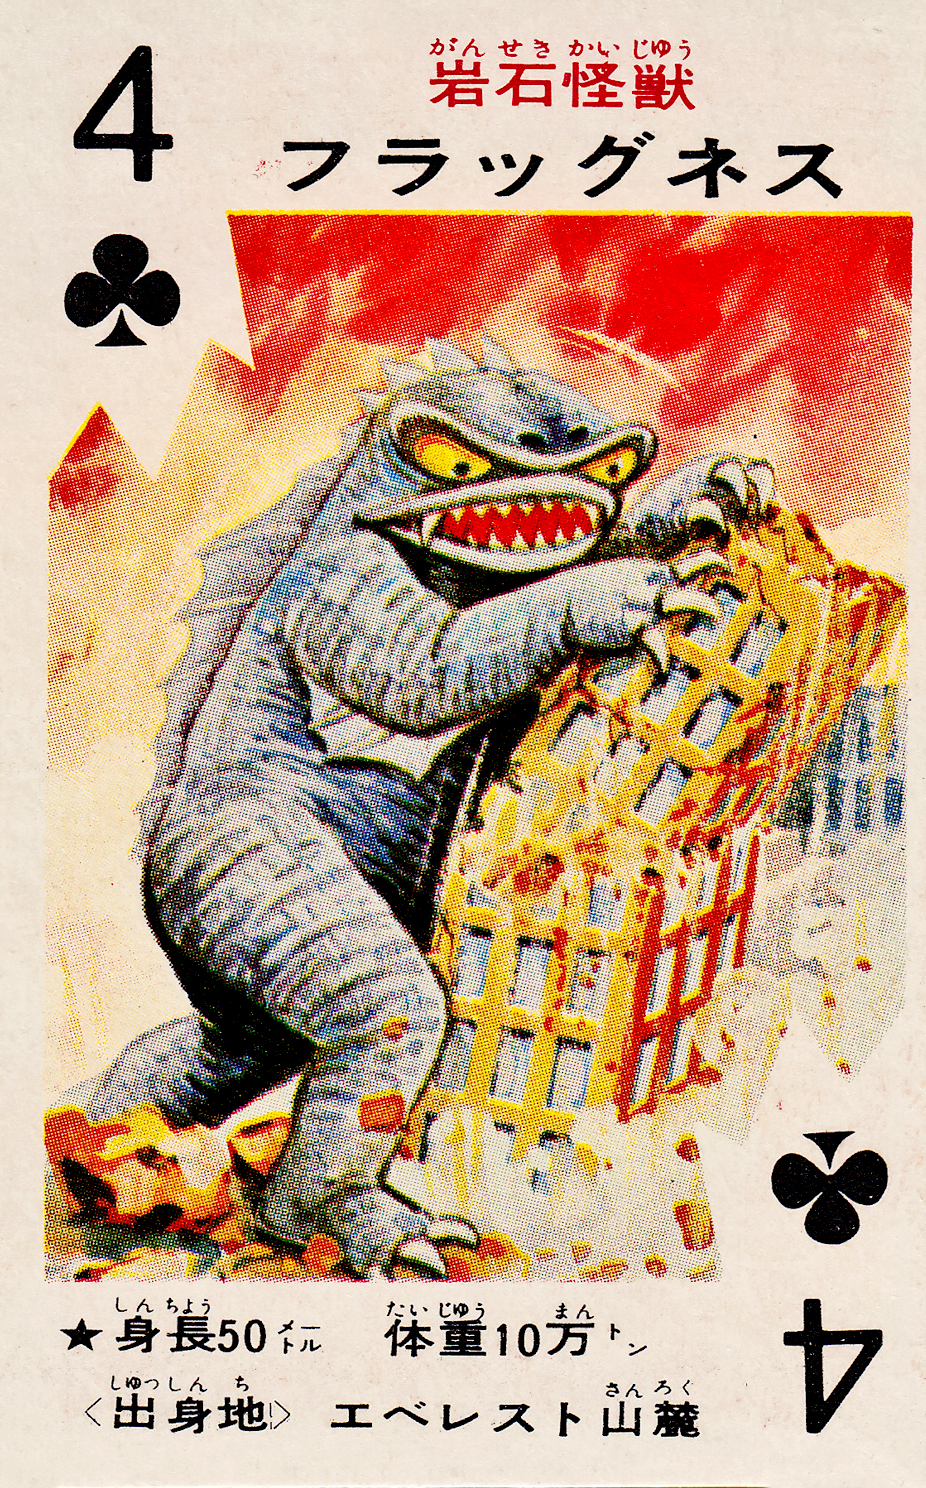 Pachimon Kaiju Cards - 2